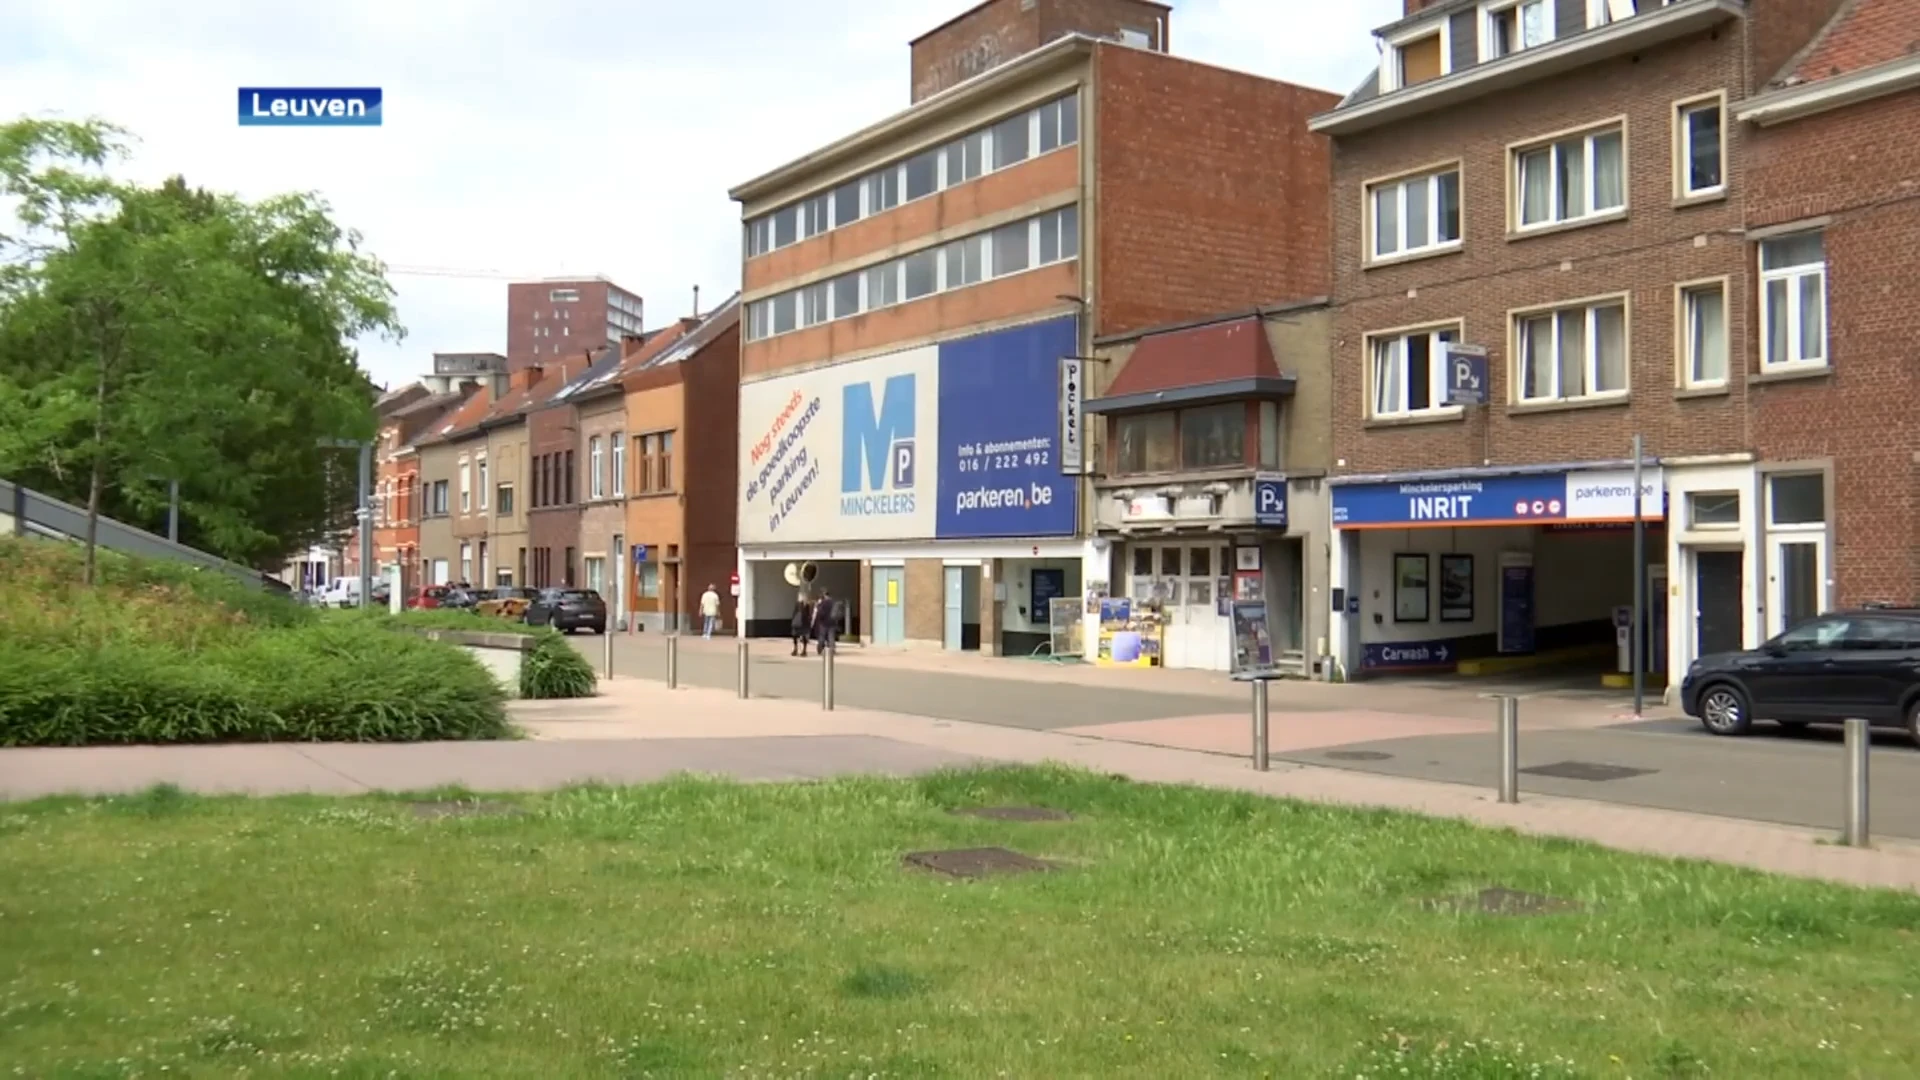 De Aldi op de Minckeler-site in Leuven moet plaatsmaken voor een winkel van de Nederlandse supermarktketen Jumbo